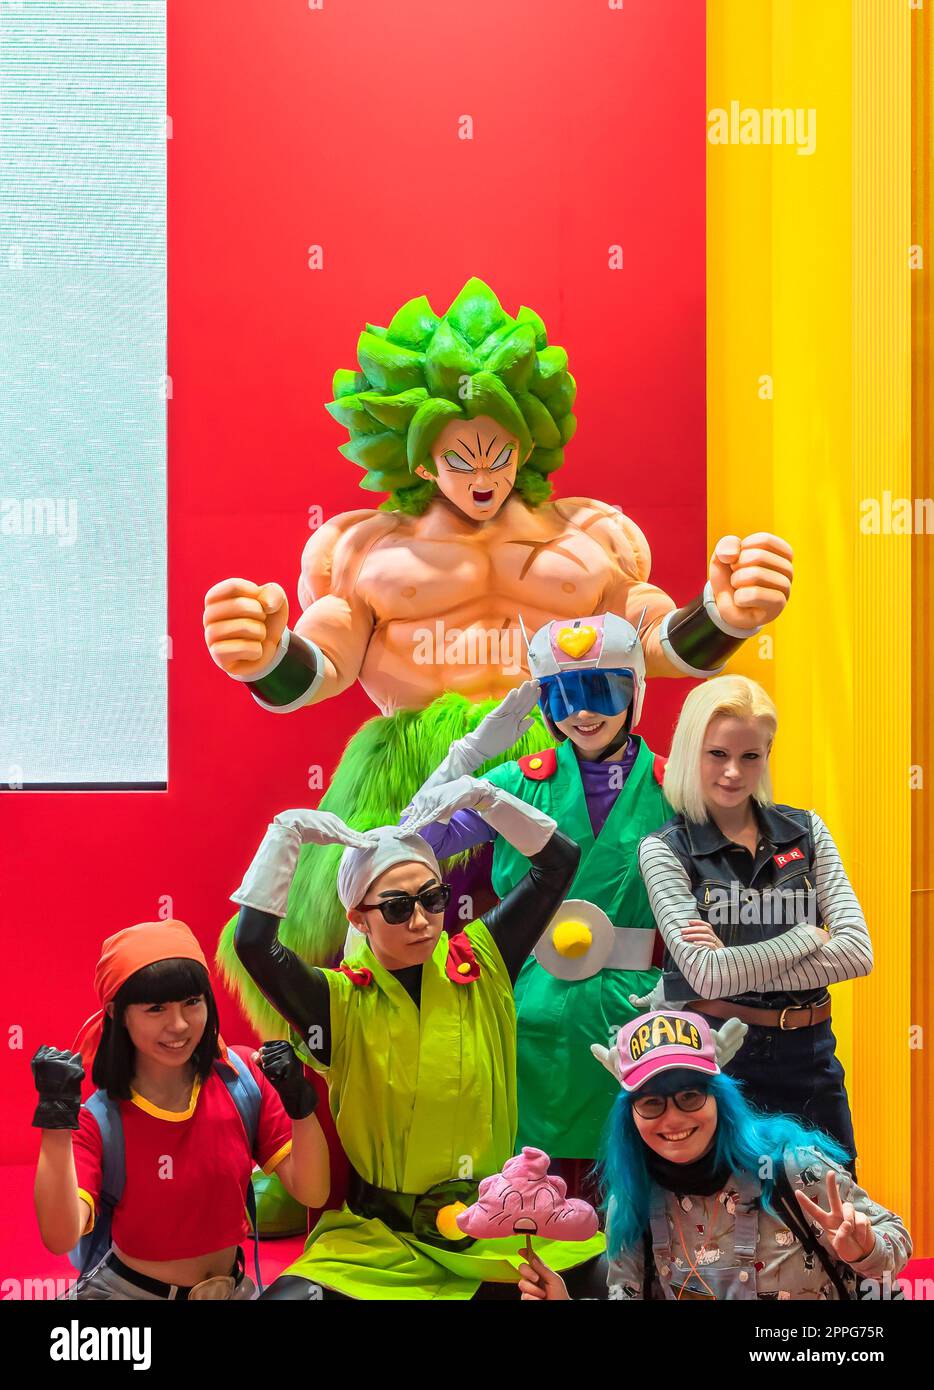 chiba, japon - décembre 22 2018 : Groupe de jeunes cosplayers portant des costumes et des perruques des personnages du manga japonais et de la série animée Dragon ball pendant la convention Jump Festa 19. Banque D'Images